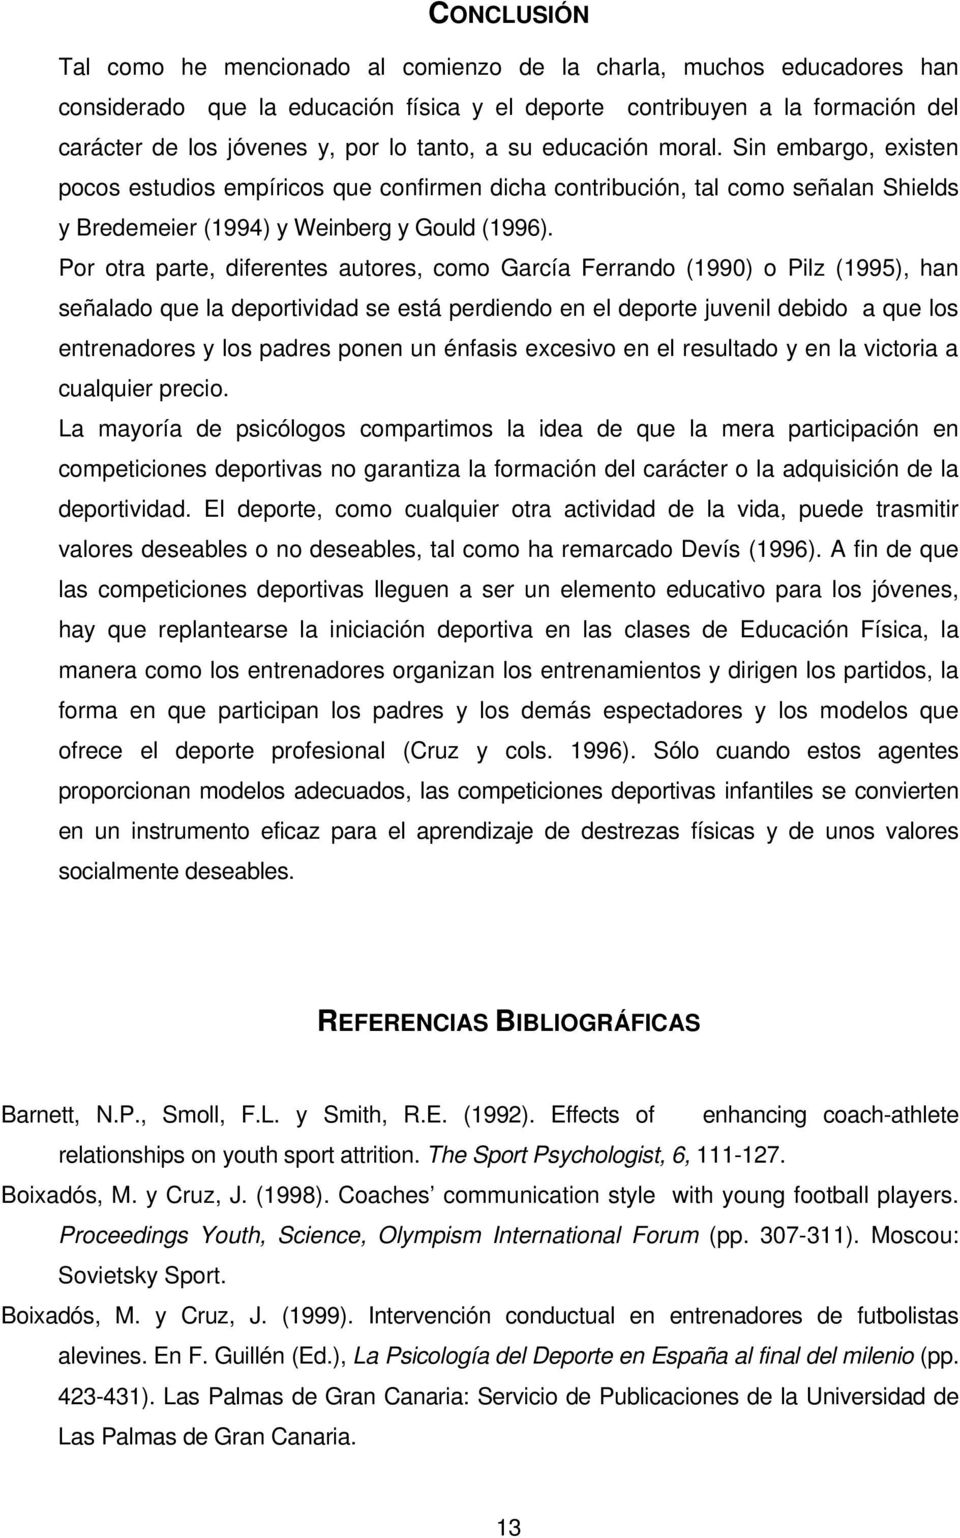 Por otra parte, diferentes autores, como García Ferrando (1990) o Pilz (1995), han señalado que la deportividad se está perdiendo en el deporte juvenil debido a que los entrenadores y los padres